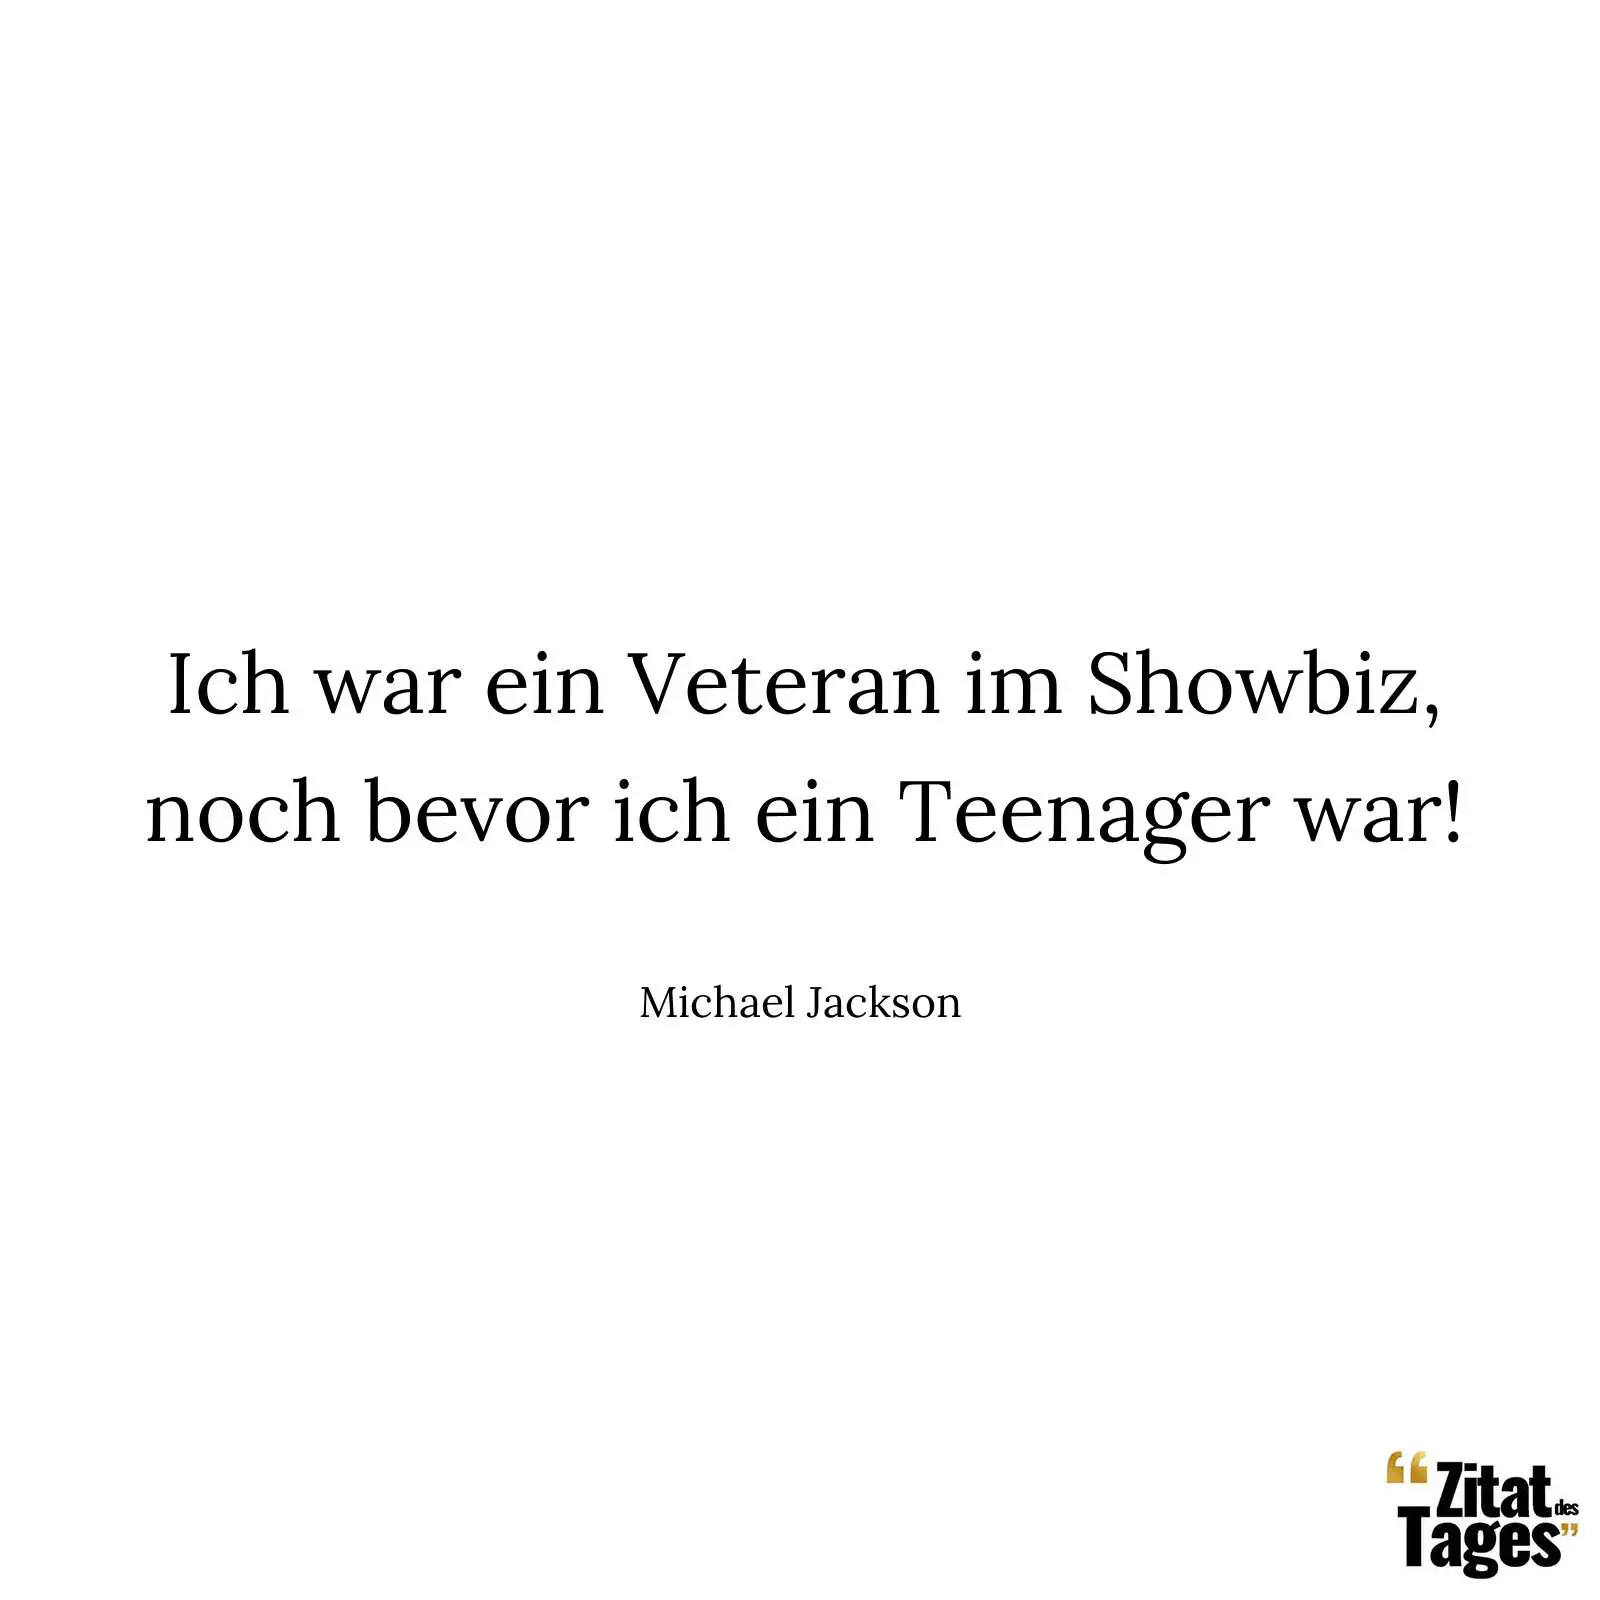 Ich war ein Veteran im Showbiz, noch bevor ich ein Teenager war! - Michael Jackson